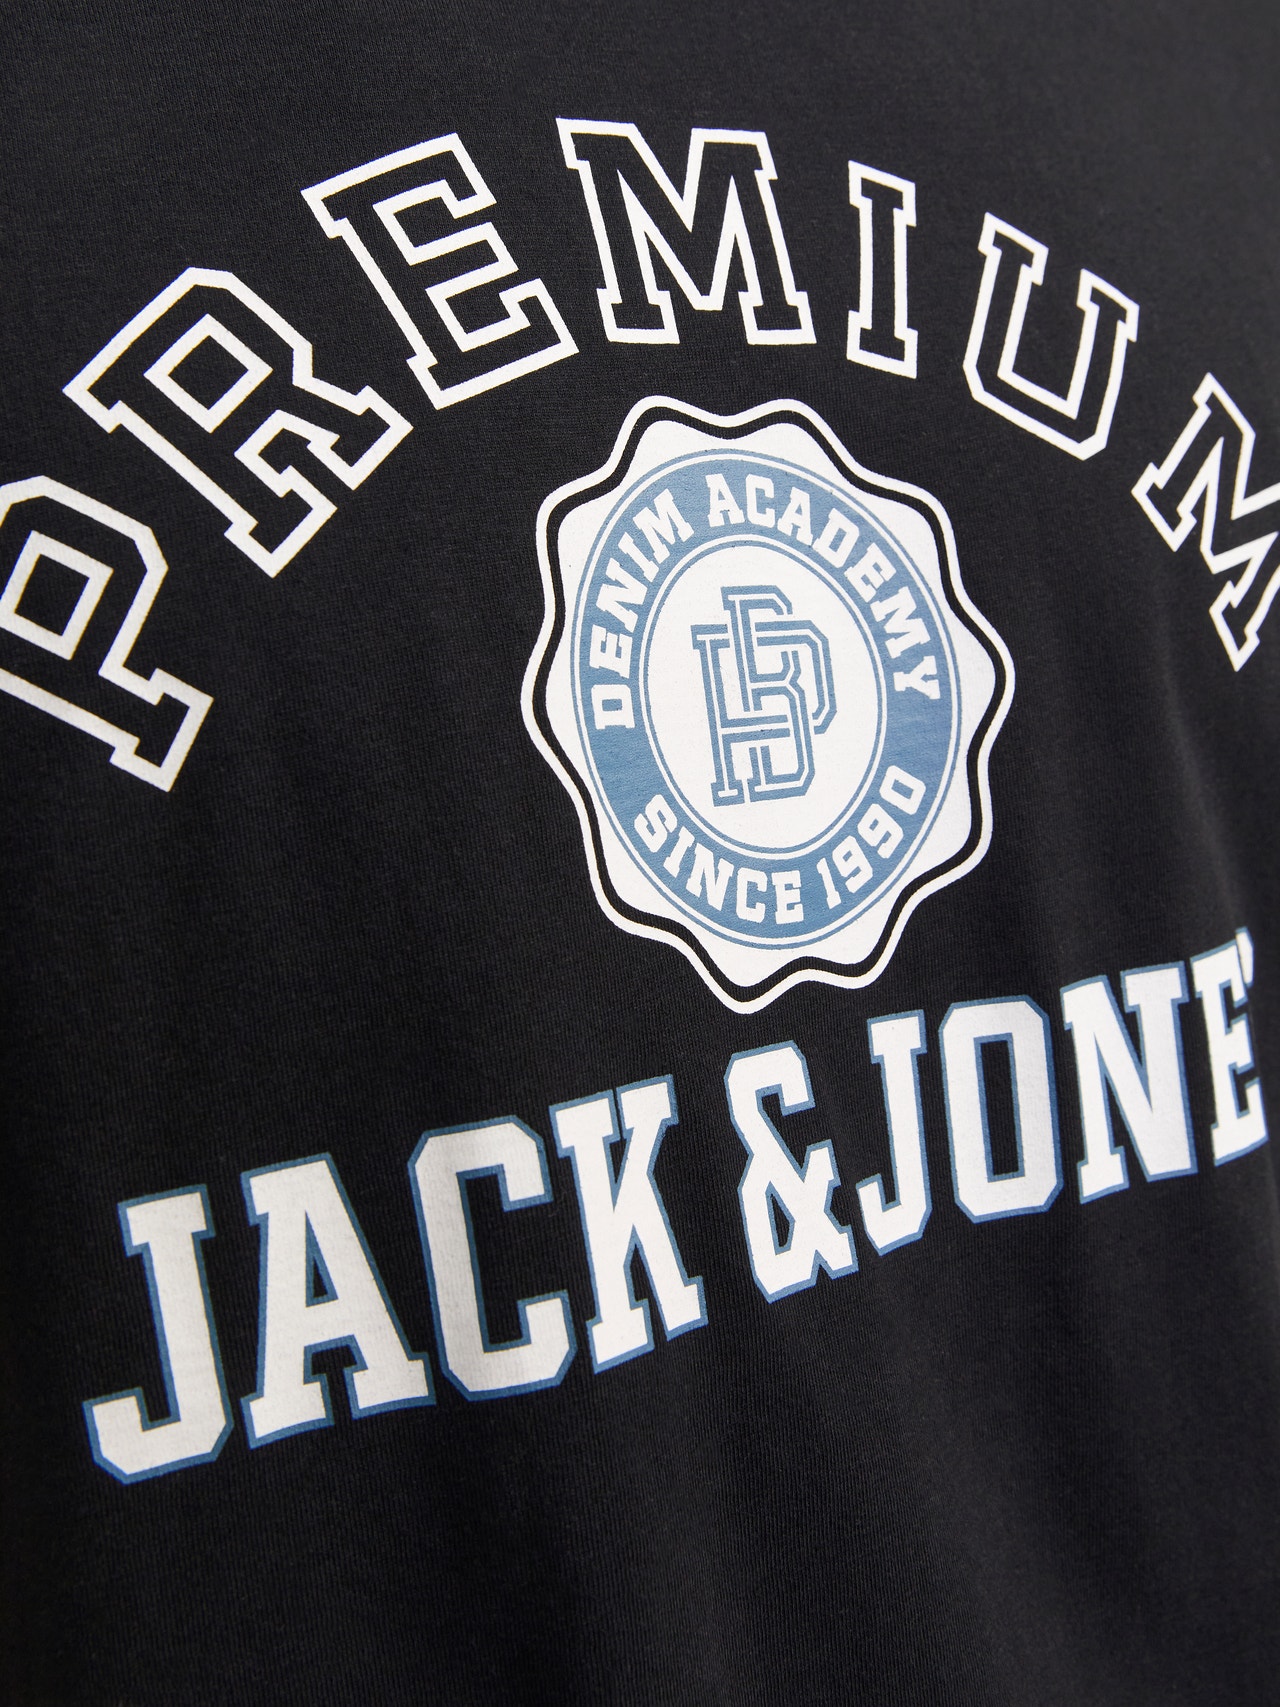 Jack & Jones Gedruckt Rundhals T-shirt -Black - 12255163